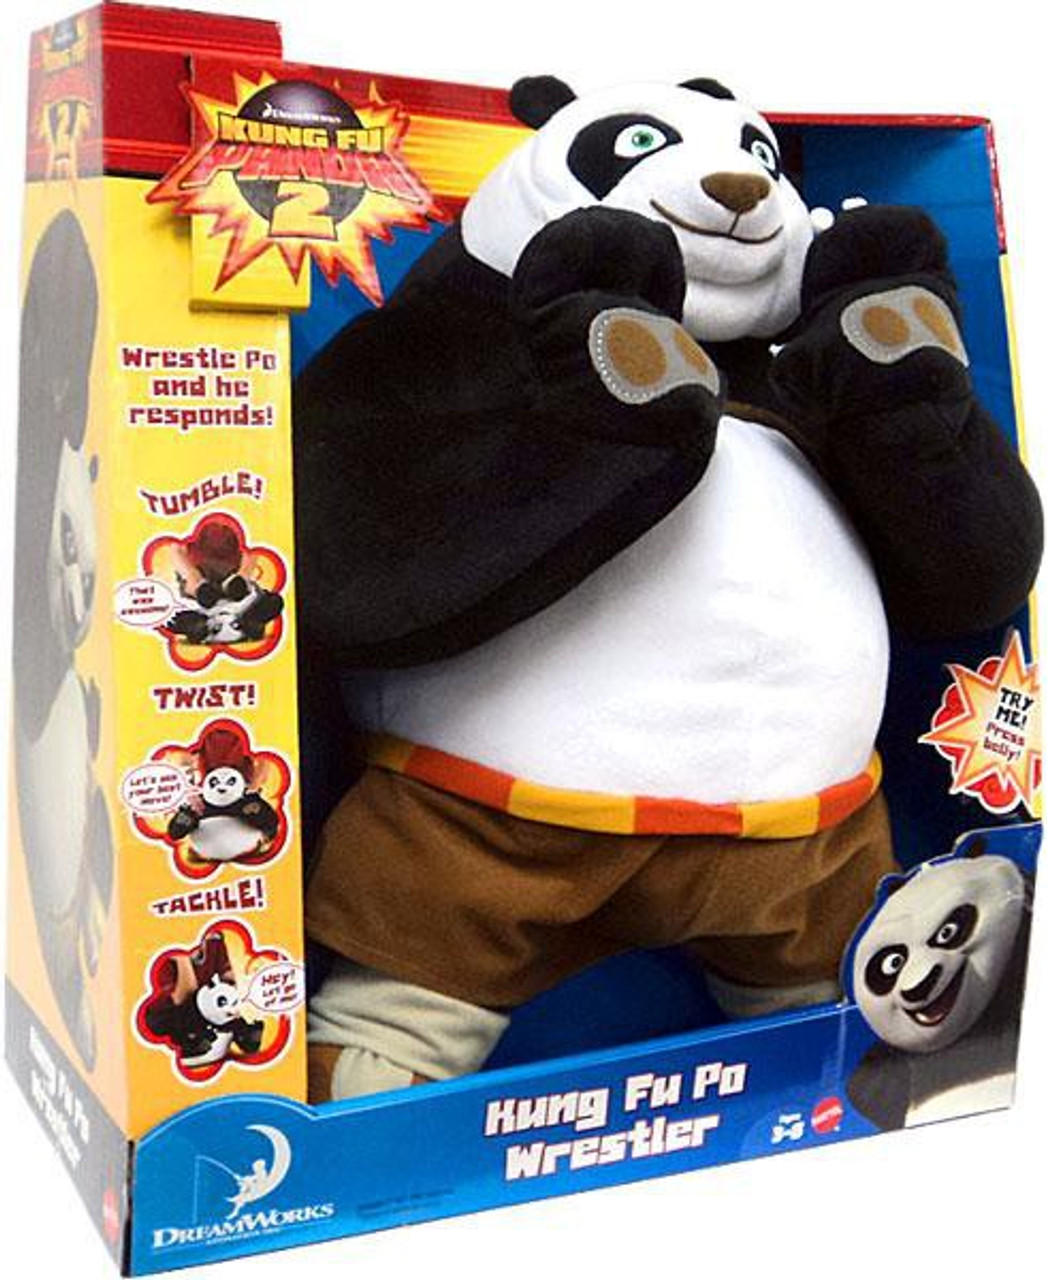 Kung Fu Panda 2 Kung Fu Po Wrestler Plush Figure Mattel Toys Toywiz - kung fu panda 3 bao morphs roblox